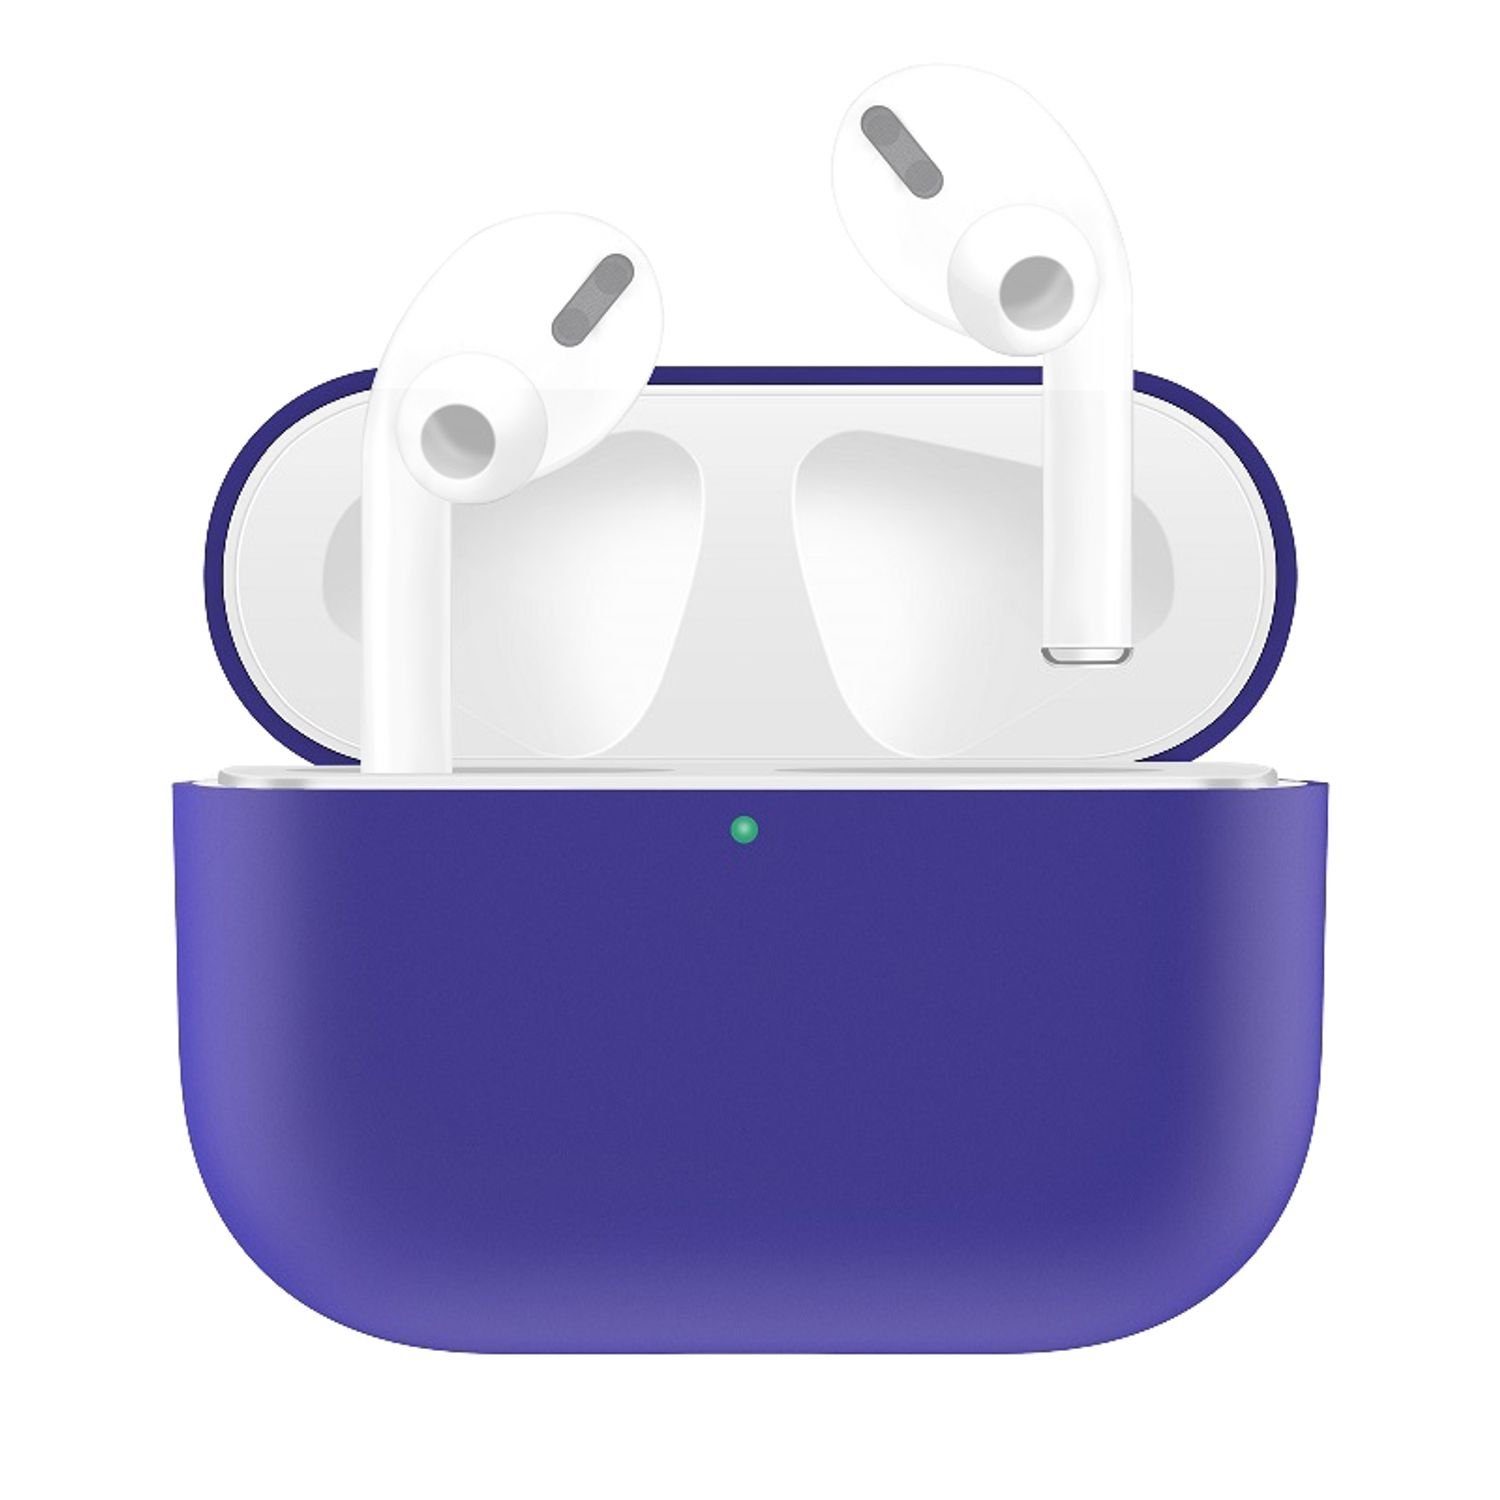 König Design Handyhülle Apple AirPods Pro, Schutzhülle für Apple AirPods Pro Handy Hülle Silikon Tasche Case Cover Violett